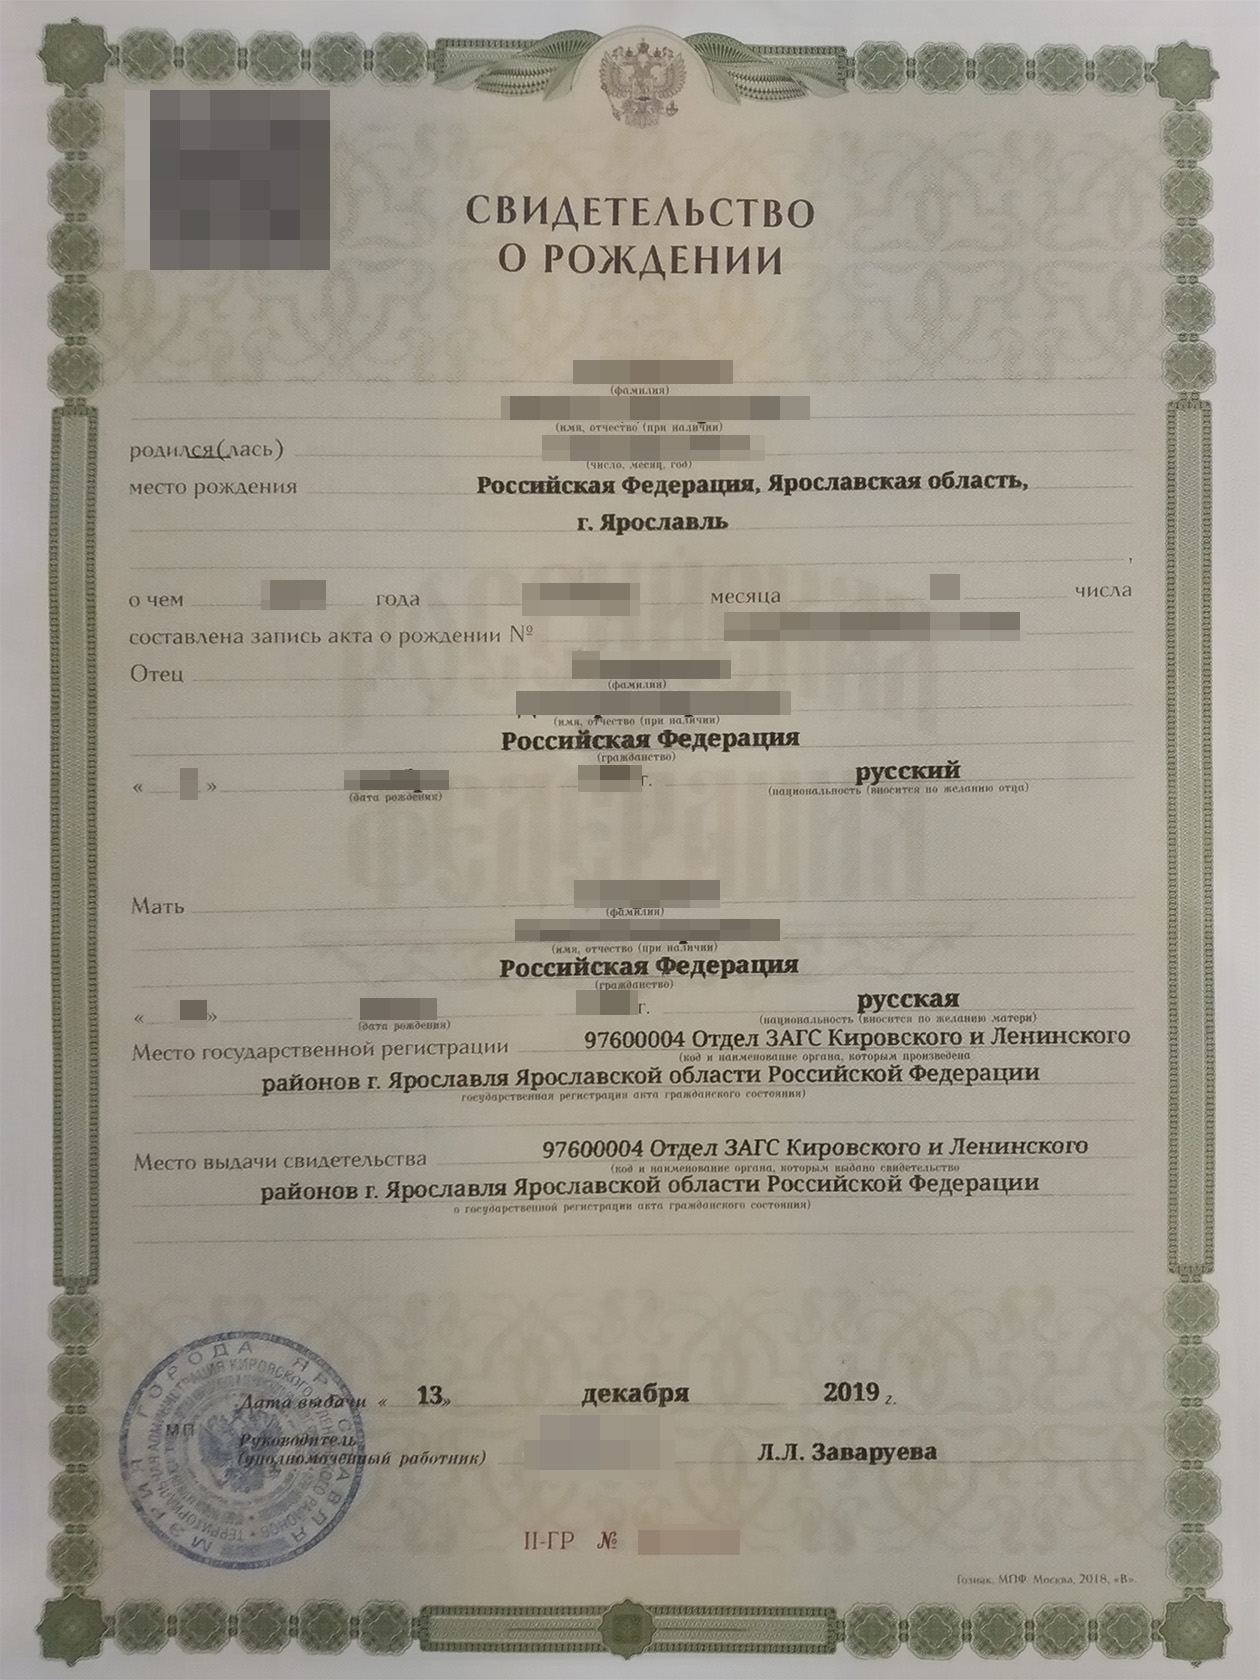 Мой сын — гражданин РФ по рождению: он родился в России, а у нас с супругой российское гражданство